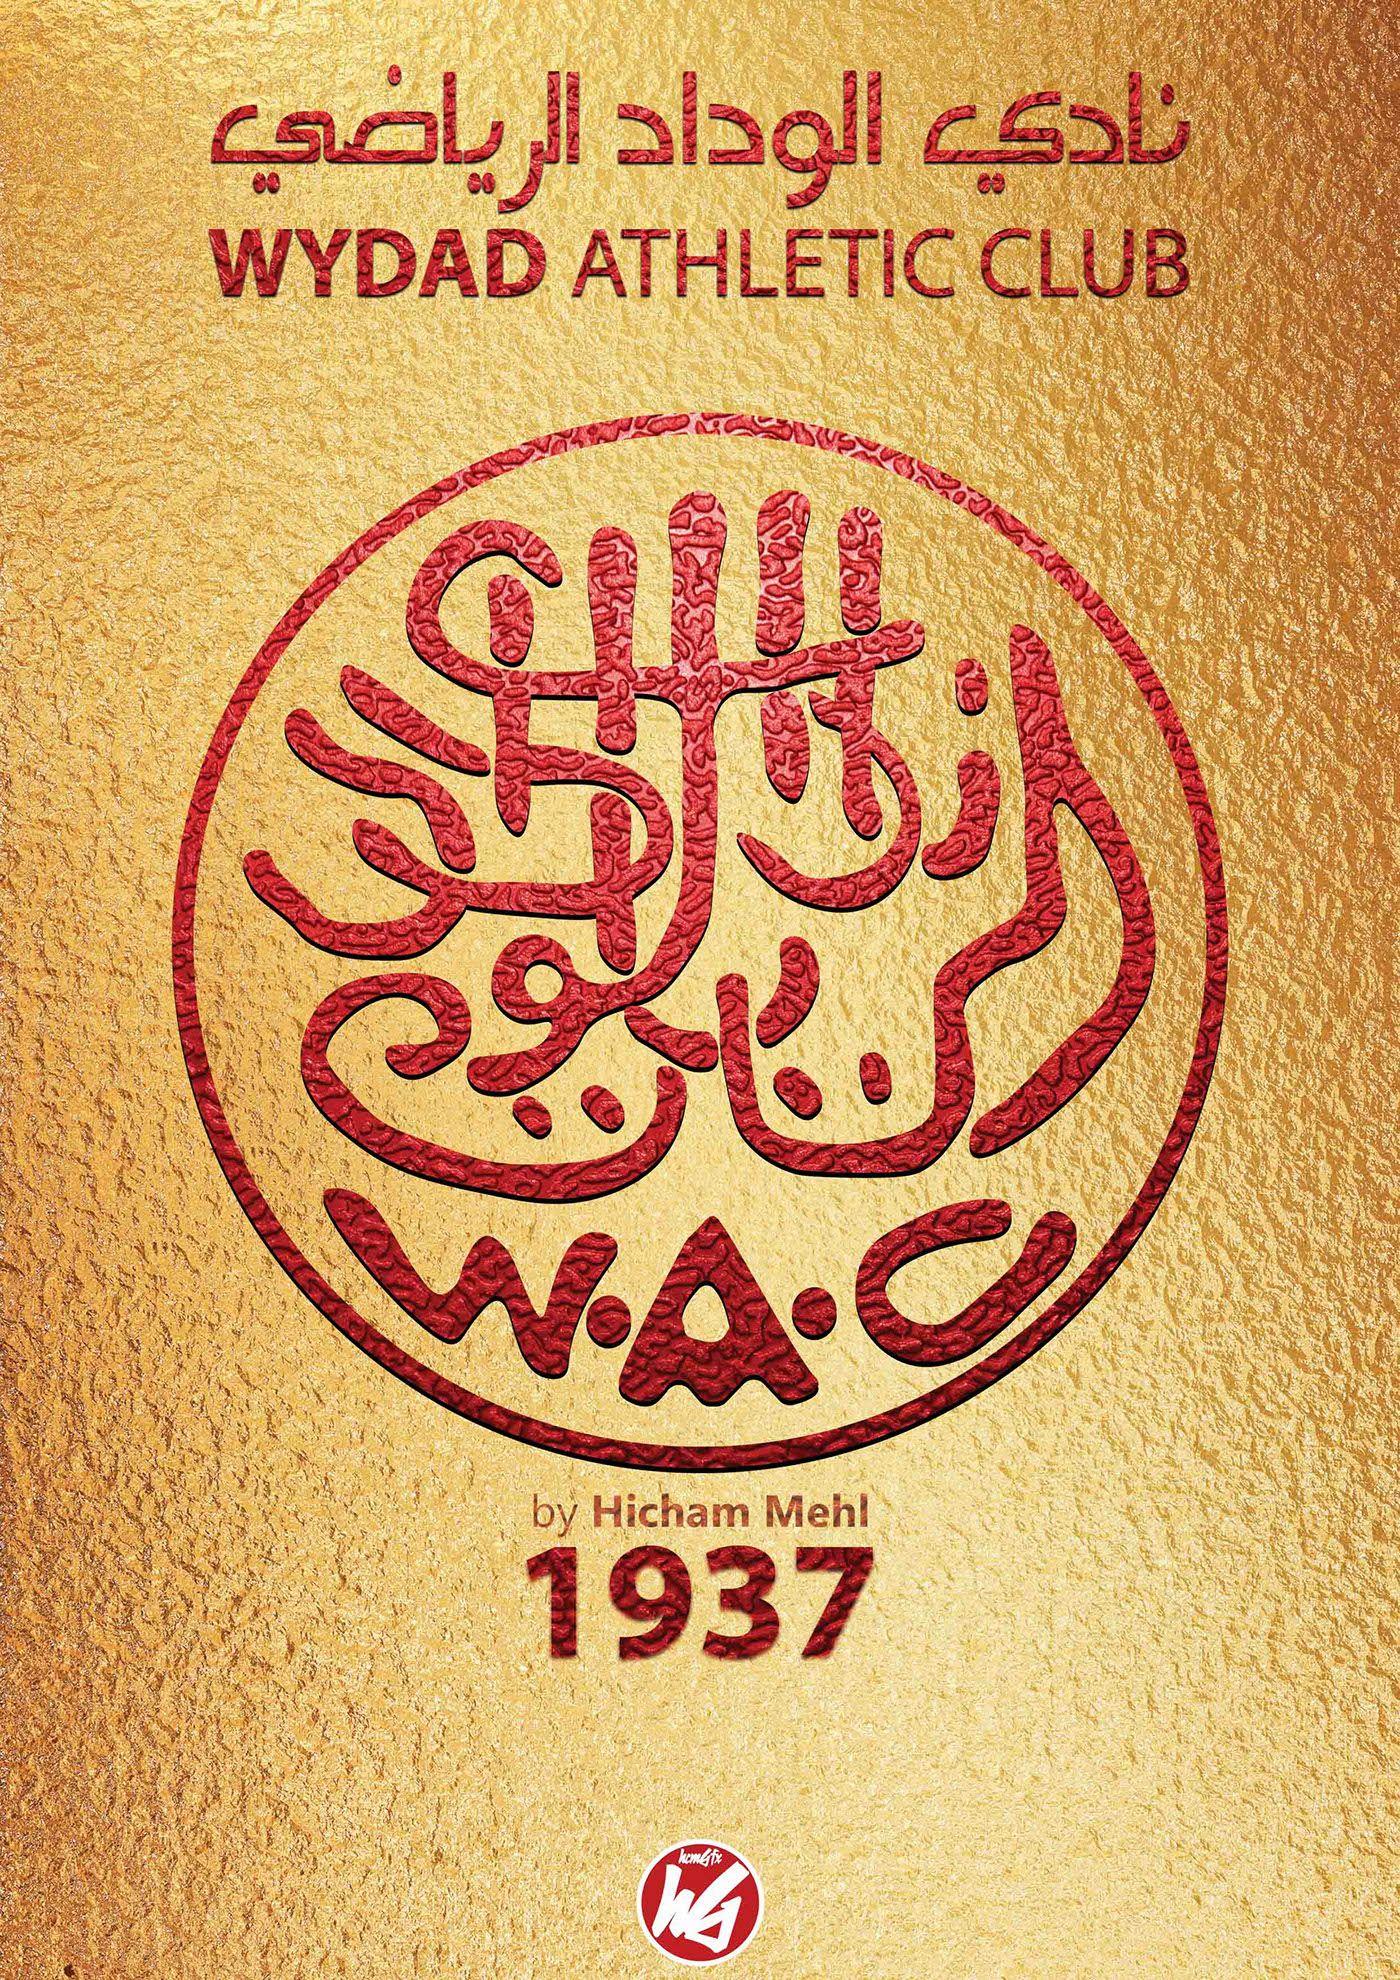 WAC Logo - Ancien logo du WYDAD ATHLETIC CLUB